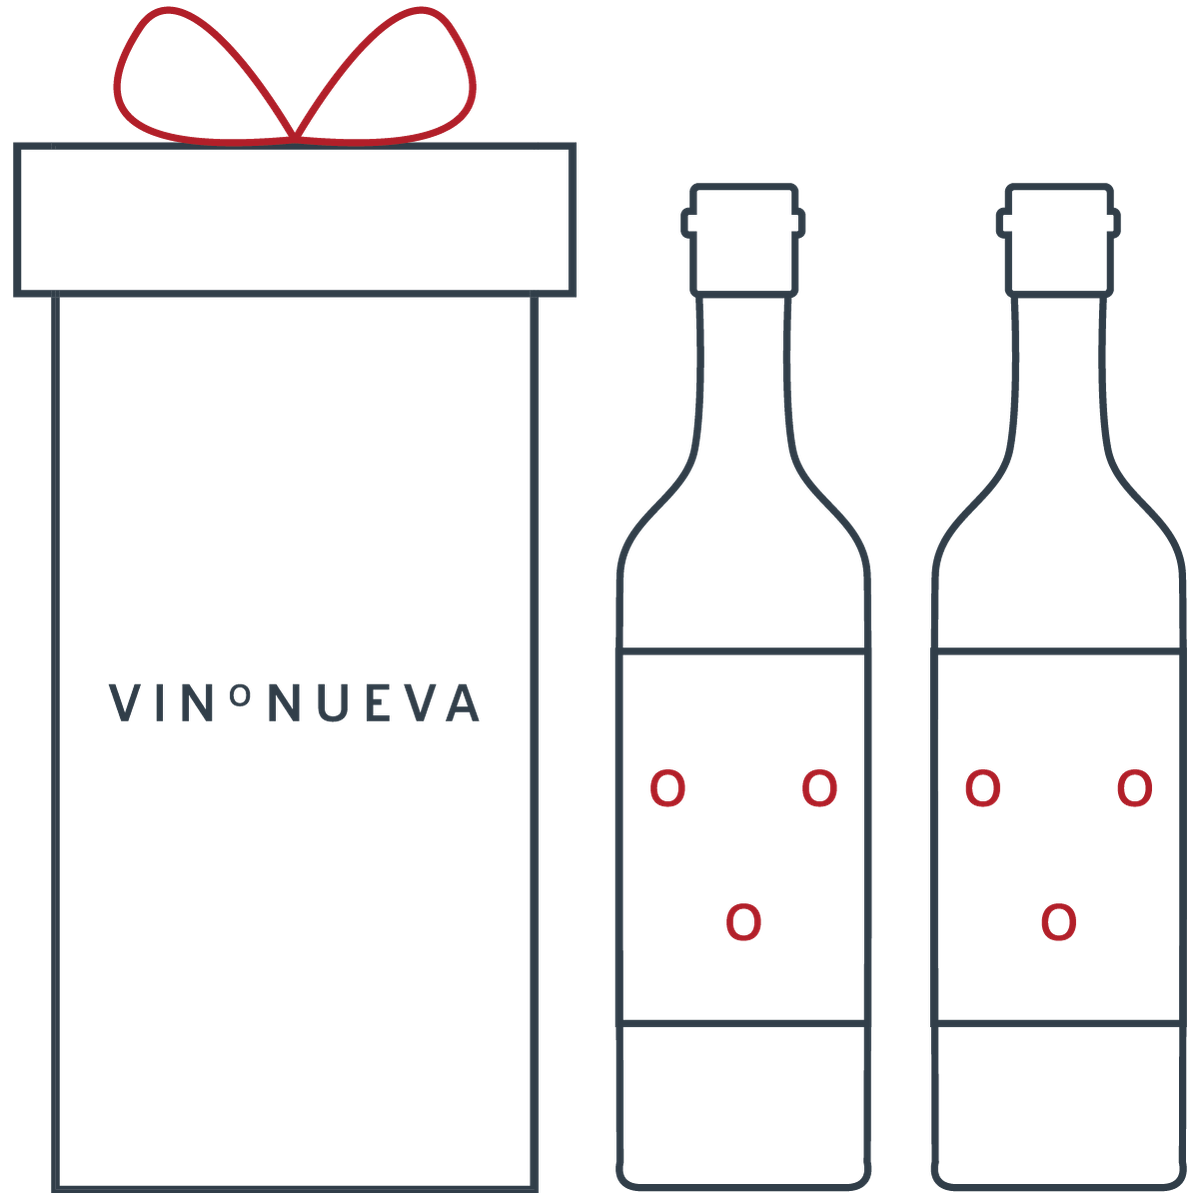 Personalized Gifting - VinoNueva Fine & Rare Wine Shop in Miami